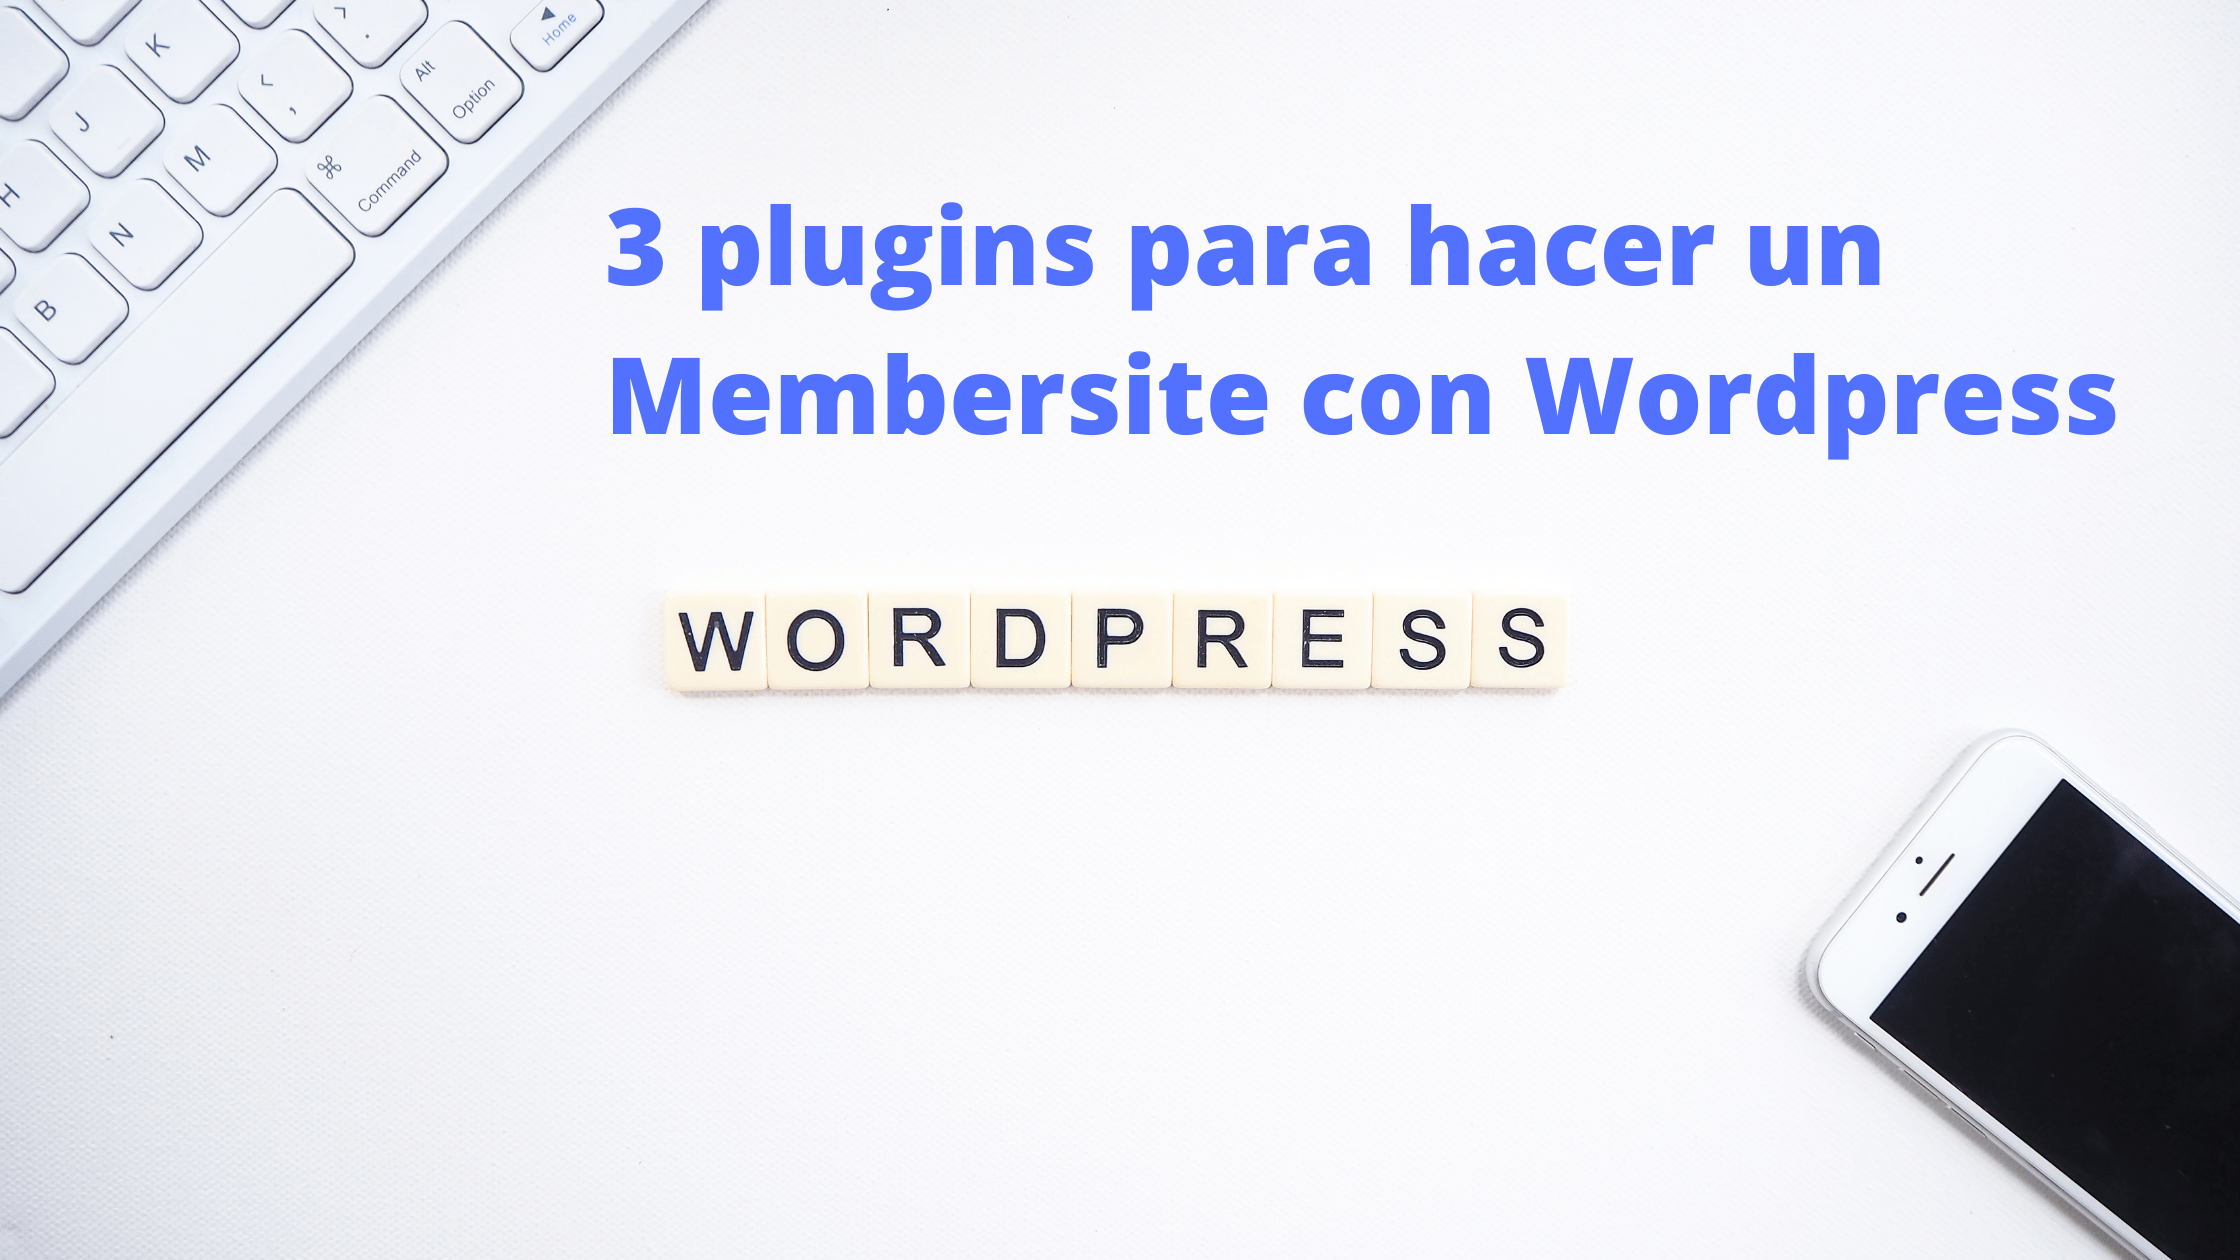 3 plugins para hacer un Membersite con WordPress